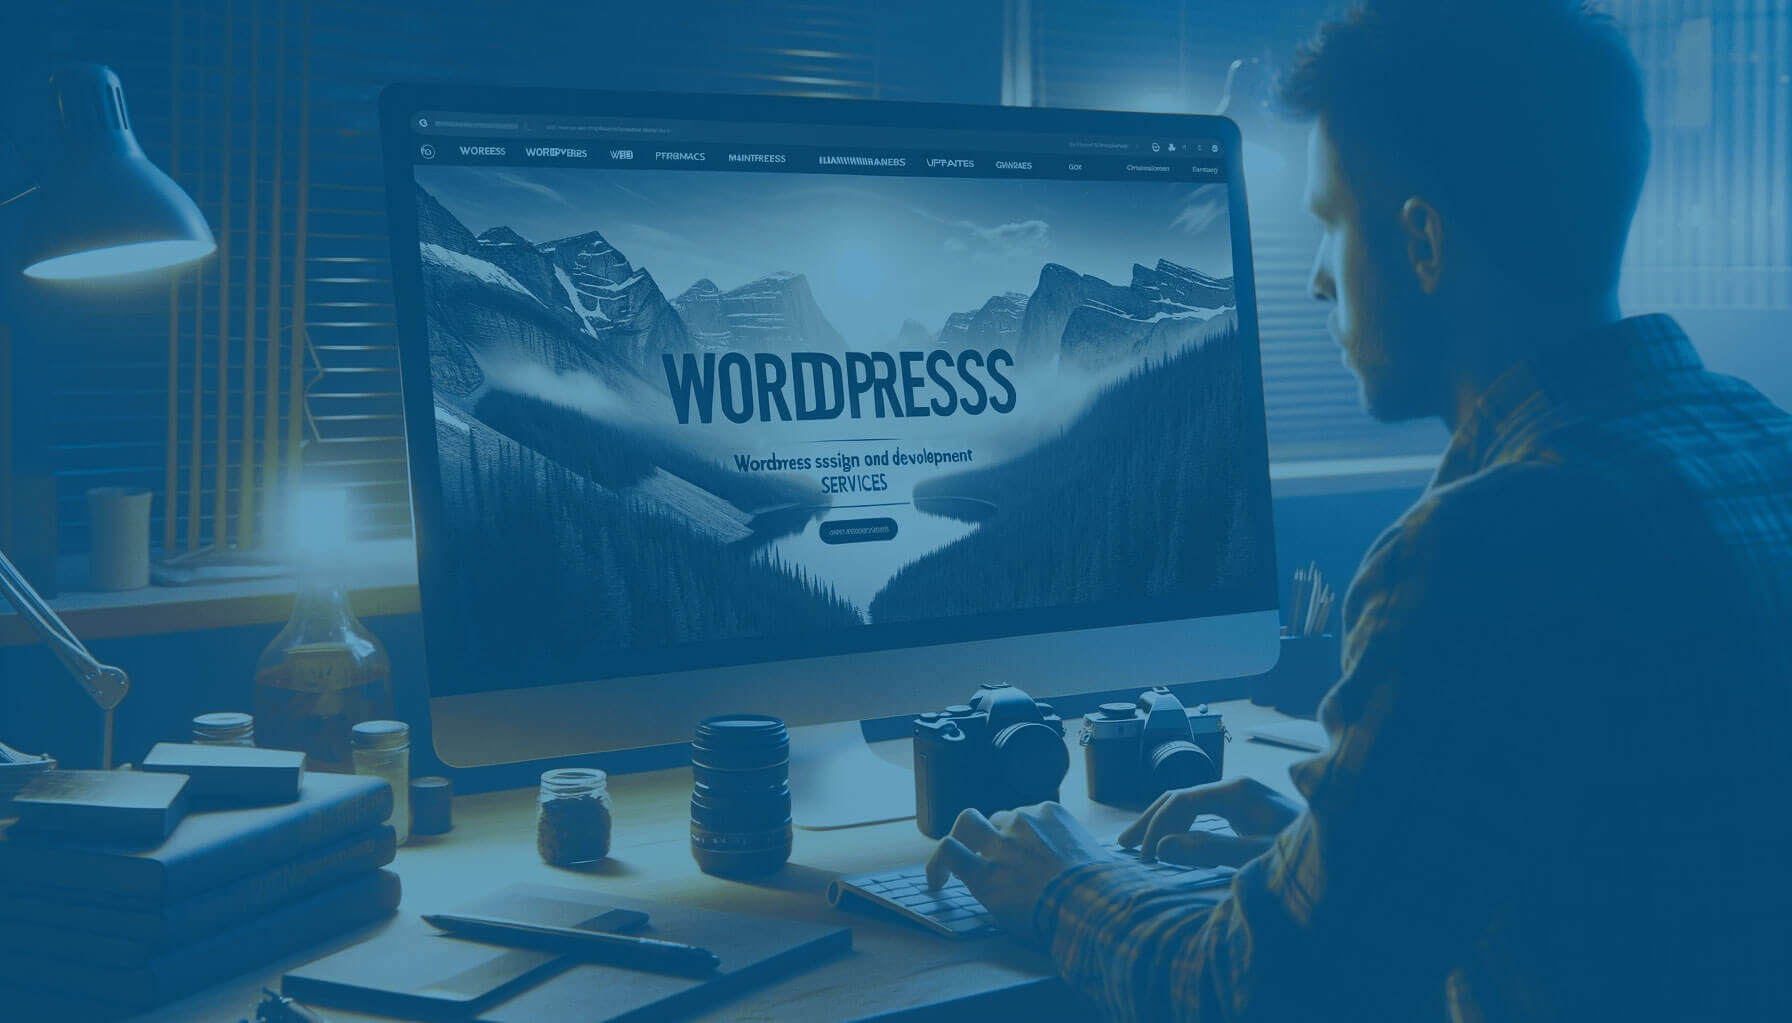 WordPress web tasarım ve geliştirme hizmetlerini temsil eden koyulaştırılmış arkaplan görseli, hero bölümü için ideal, metin okunabilirliğini artıran koyu tema.